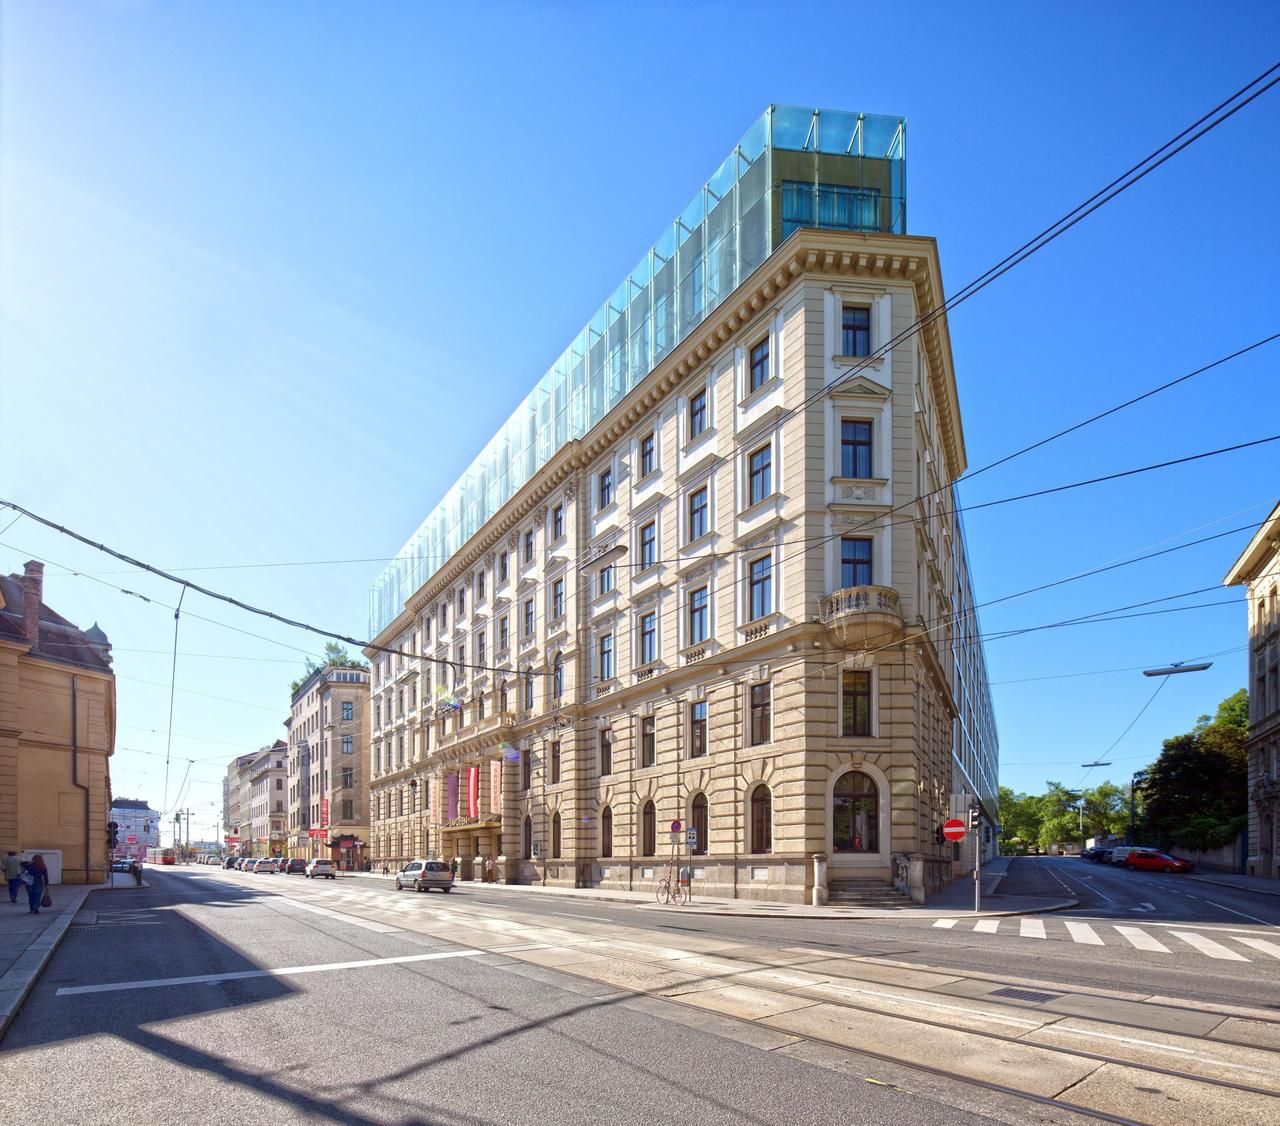 CA Immo verkauft Hotel- und Büroimmobilie in Wien an Horn Grundbesitz